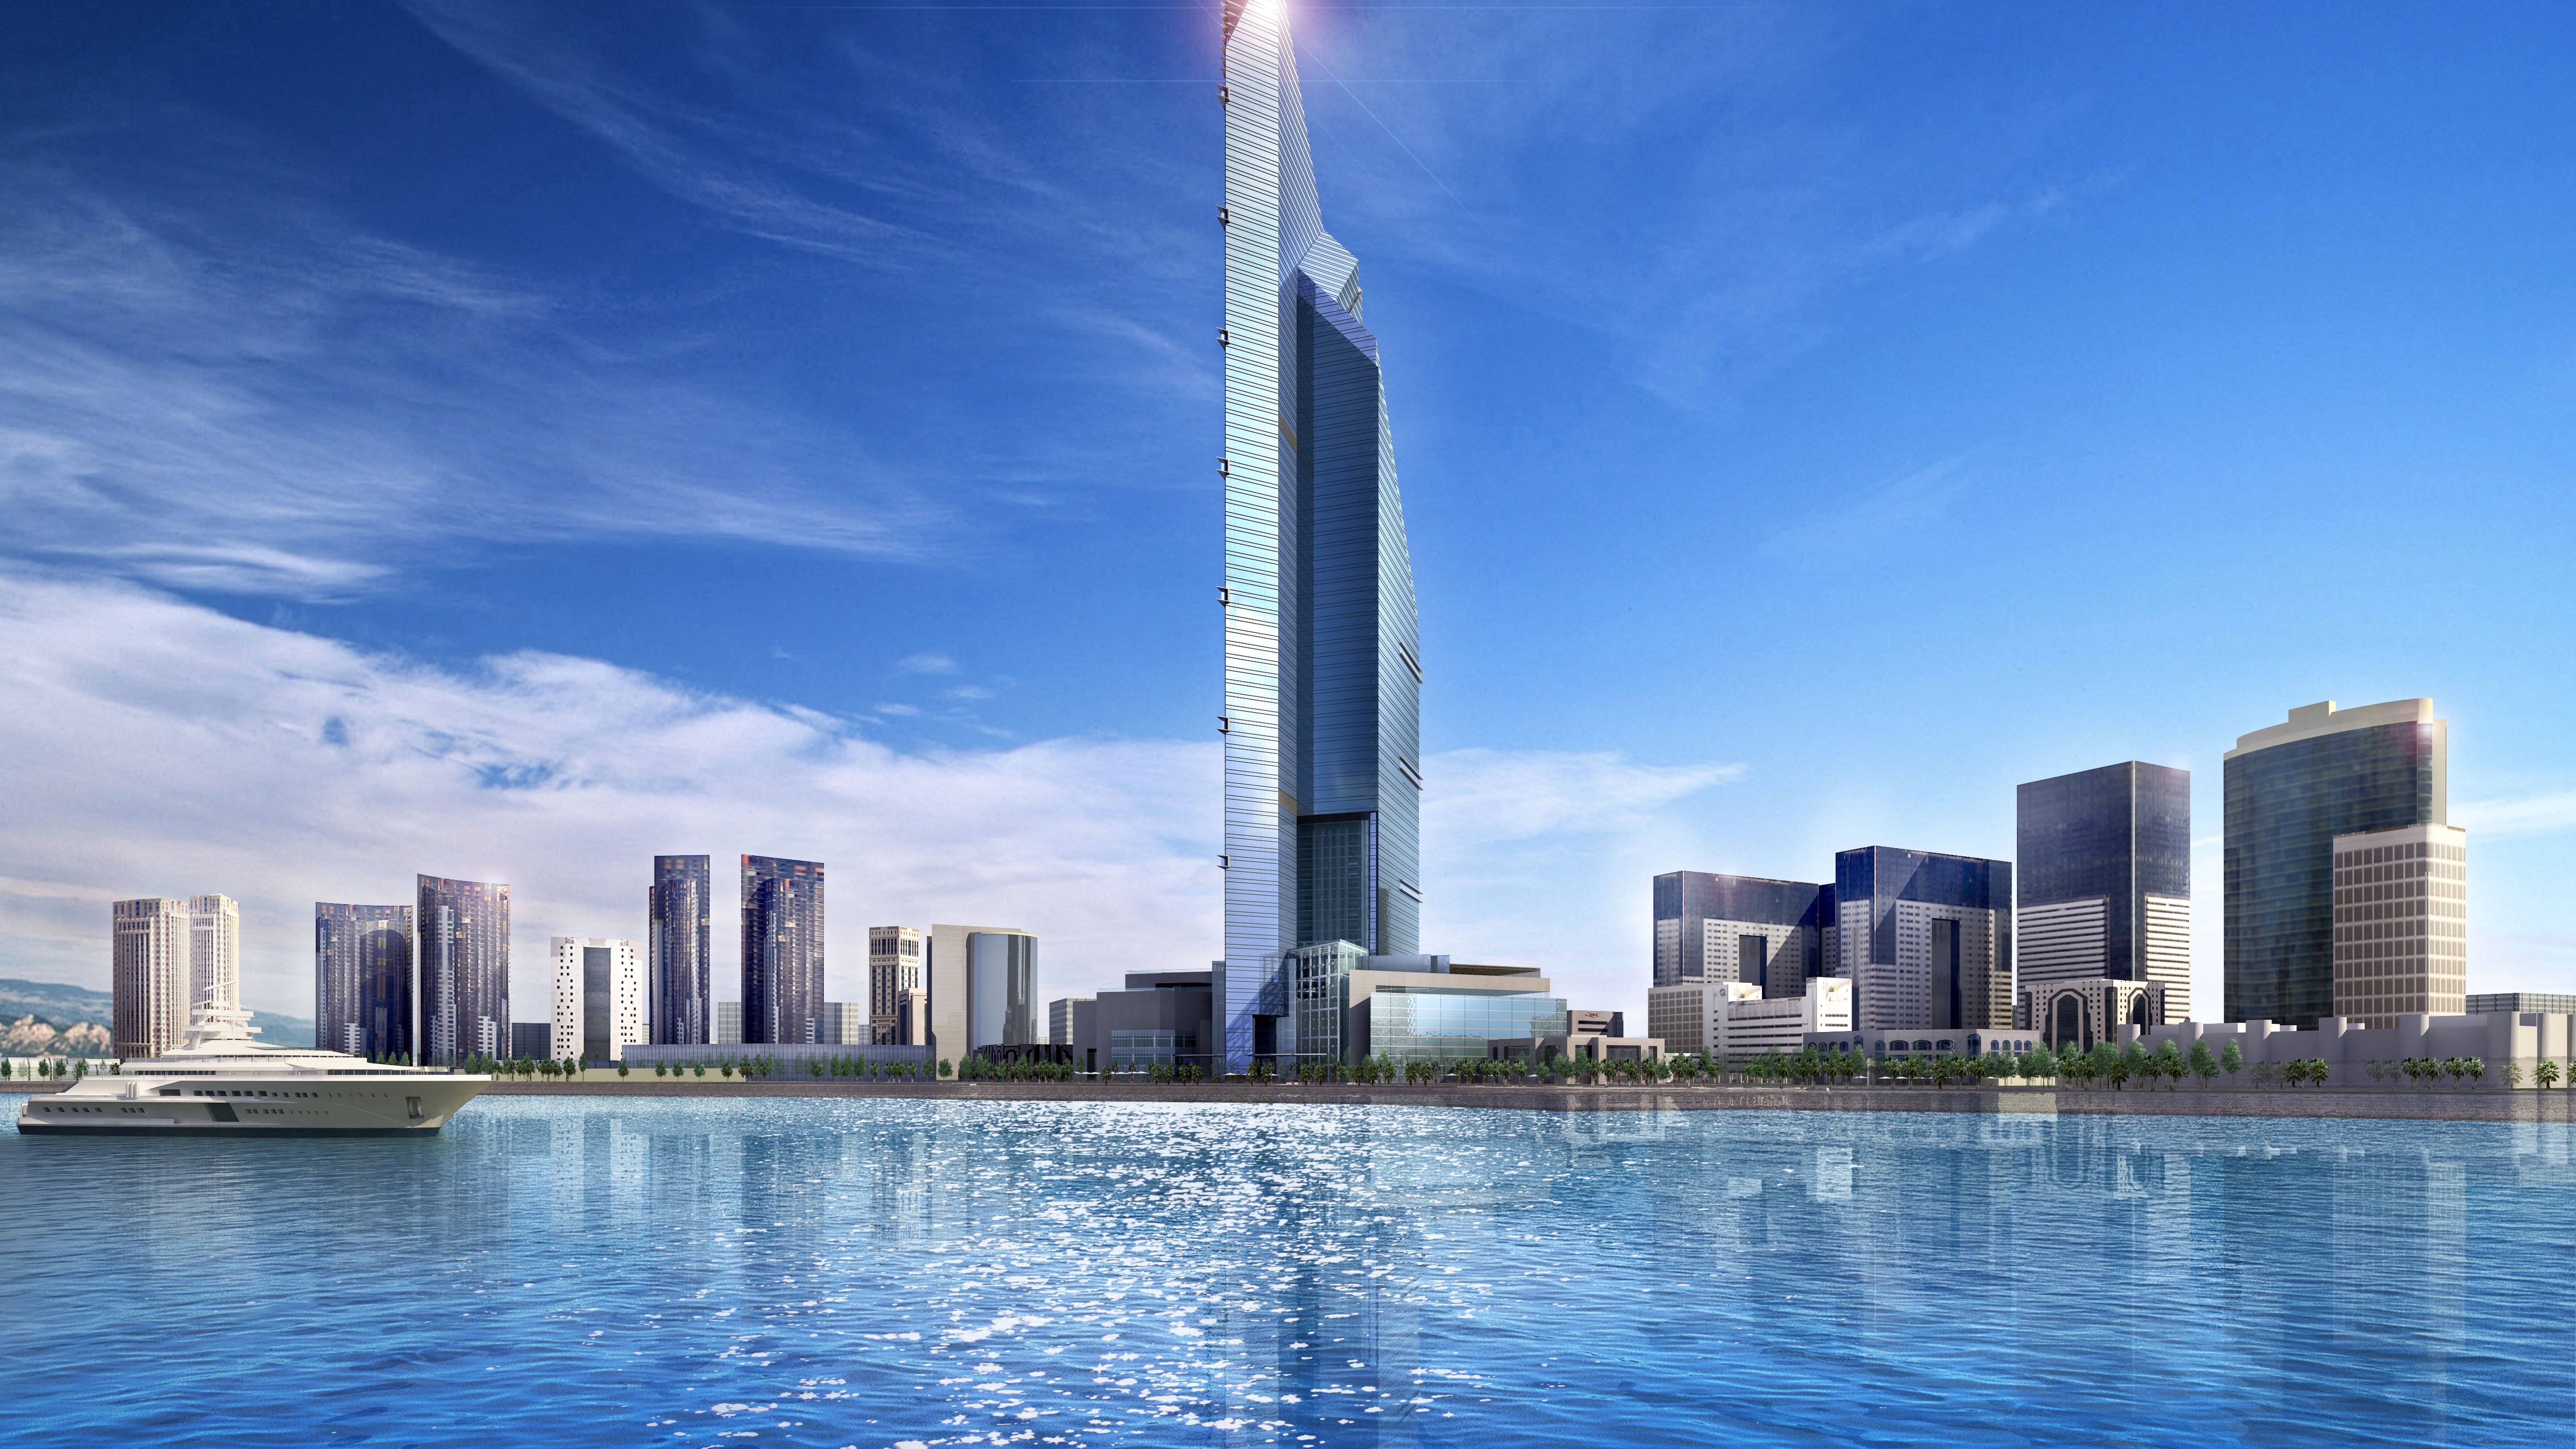 عکس استوک برج بلند زیبا و دریاچه آرامش بخش در دبی